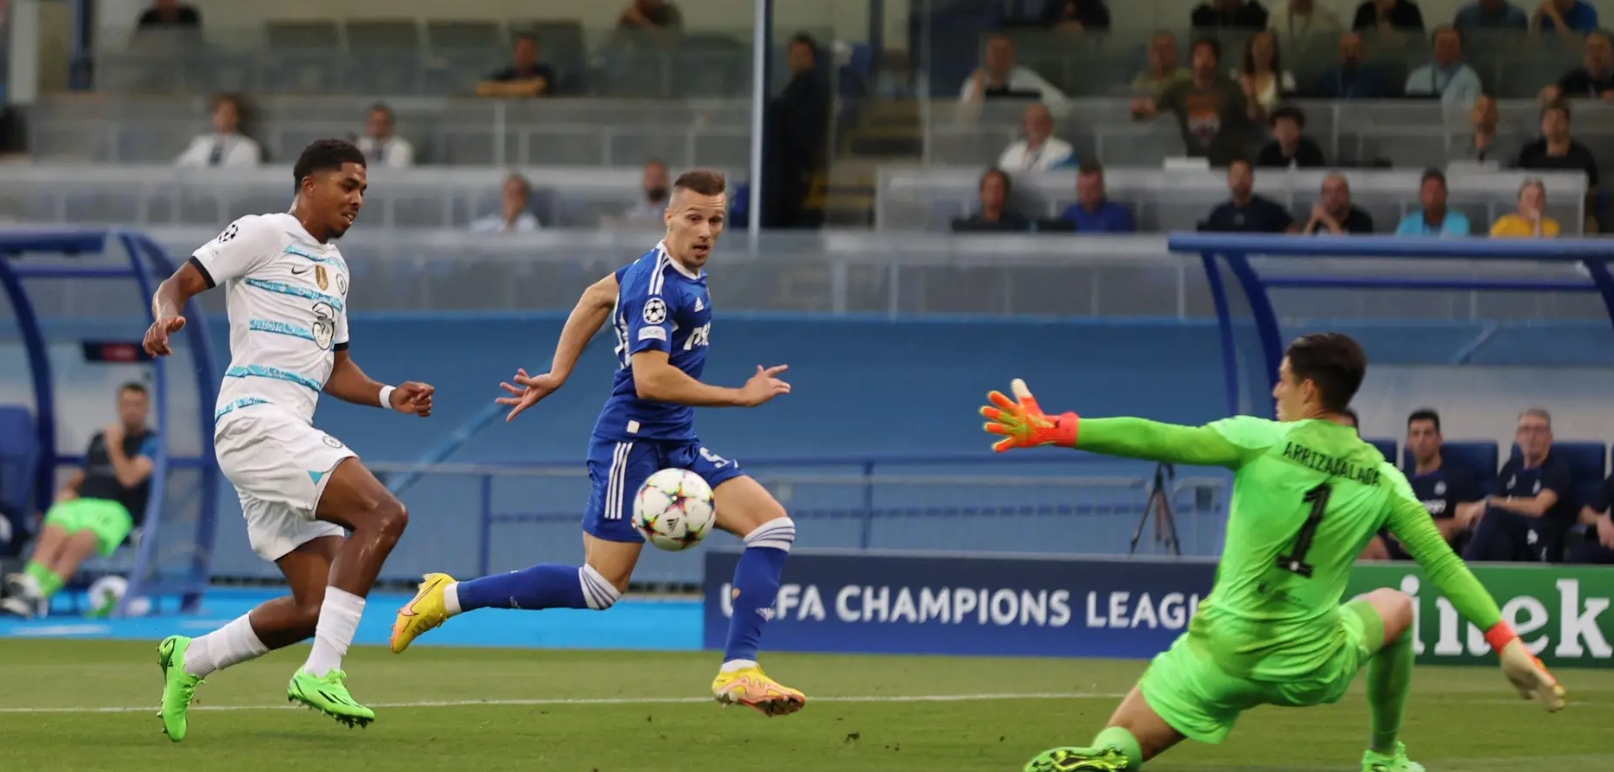 Senzacija na Maksimiru: Dinamo srušio engleskog velikana Chelsea!